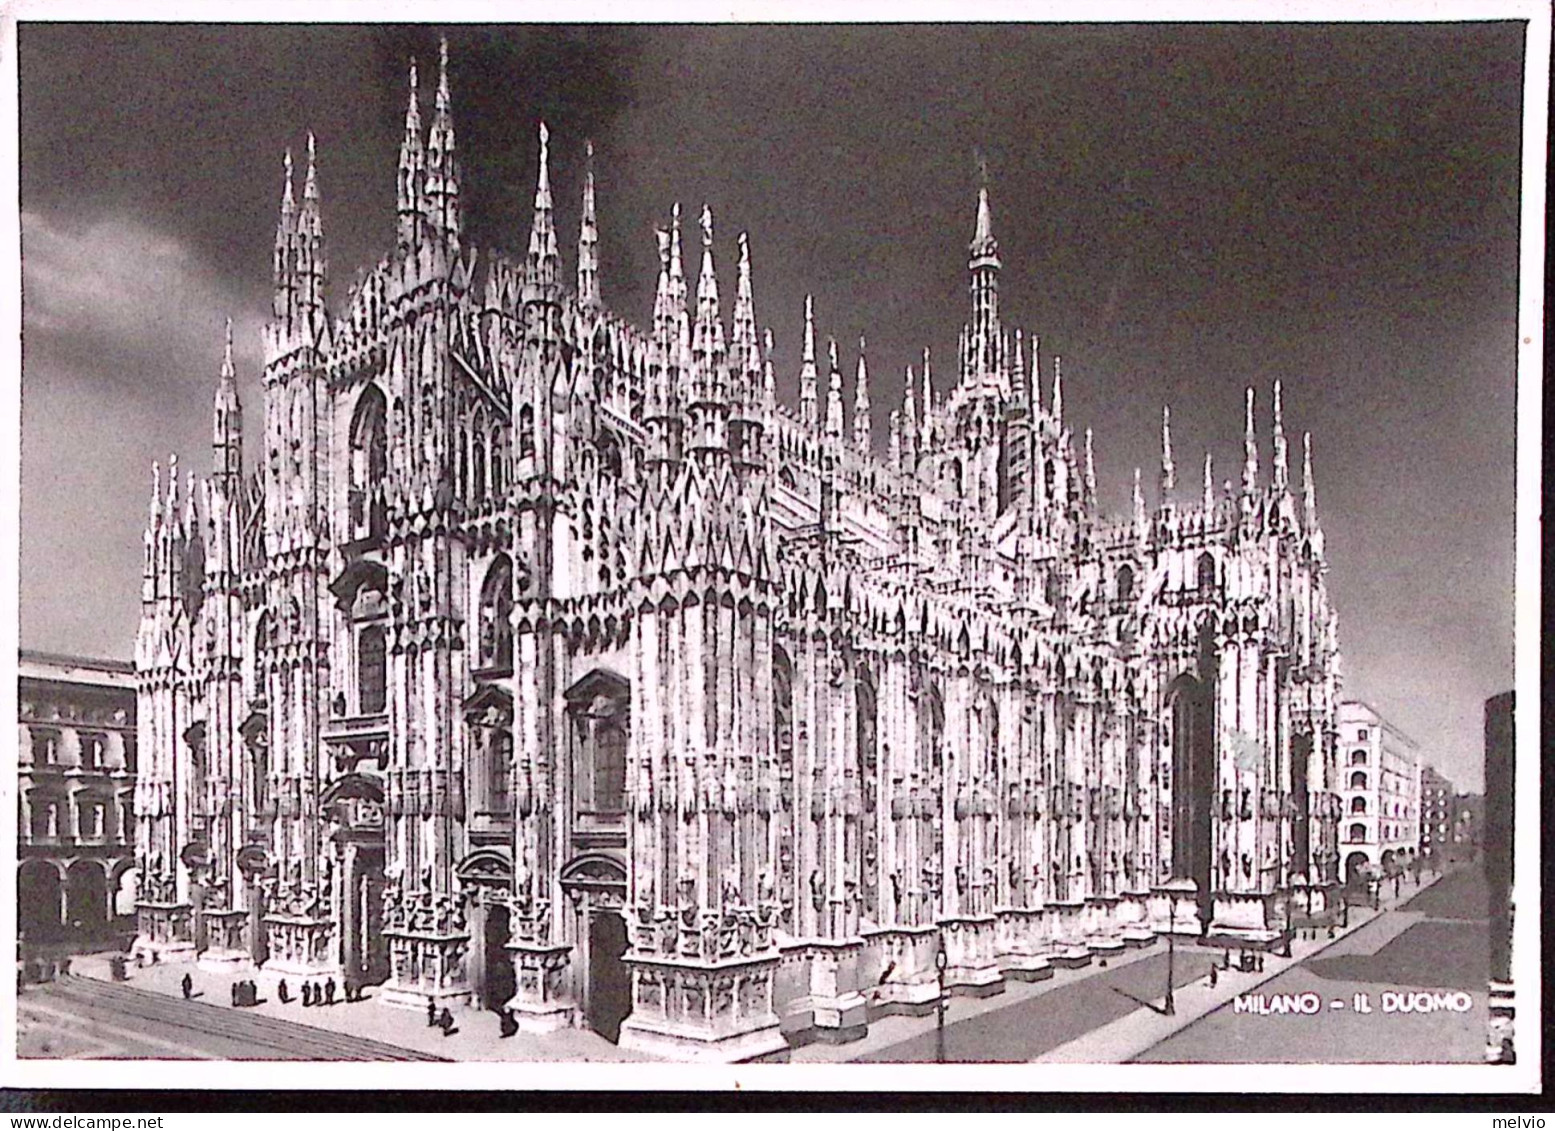 1945-Imperiale Senza Fasci Tre Lire 1 Su Cartolina (Milano Il Duomo) Per La Fran - Marcophilie